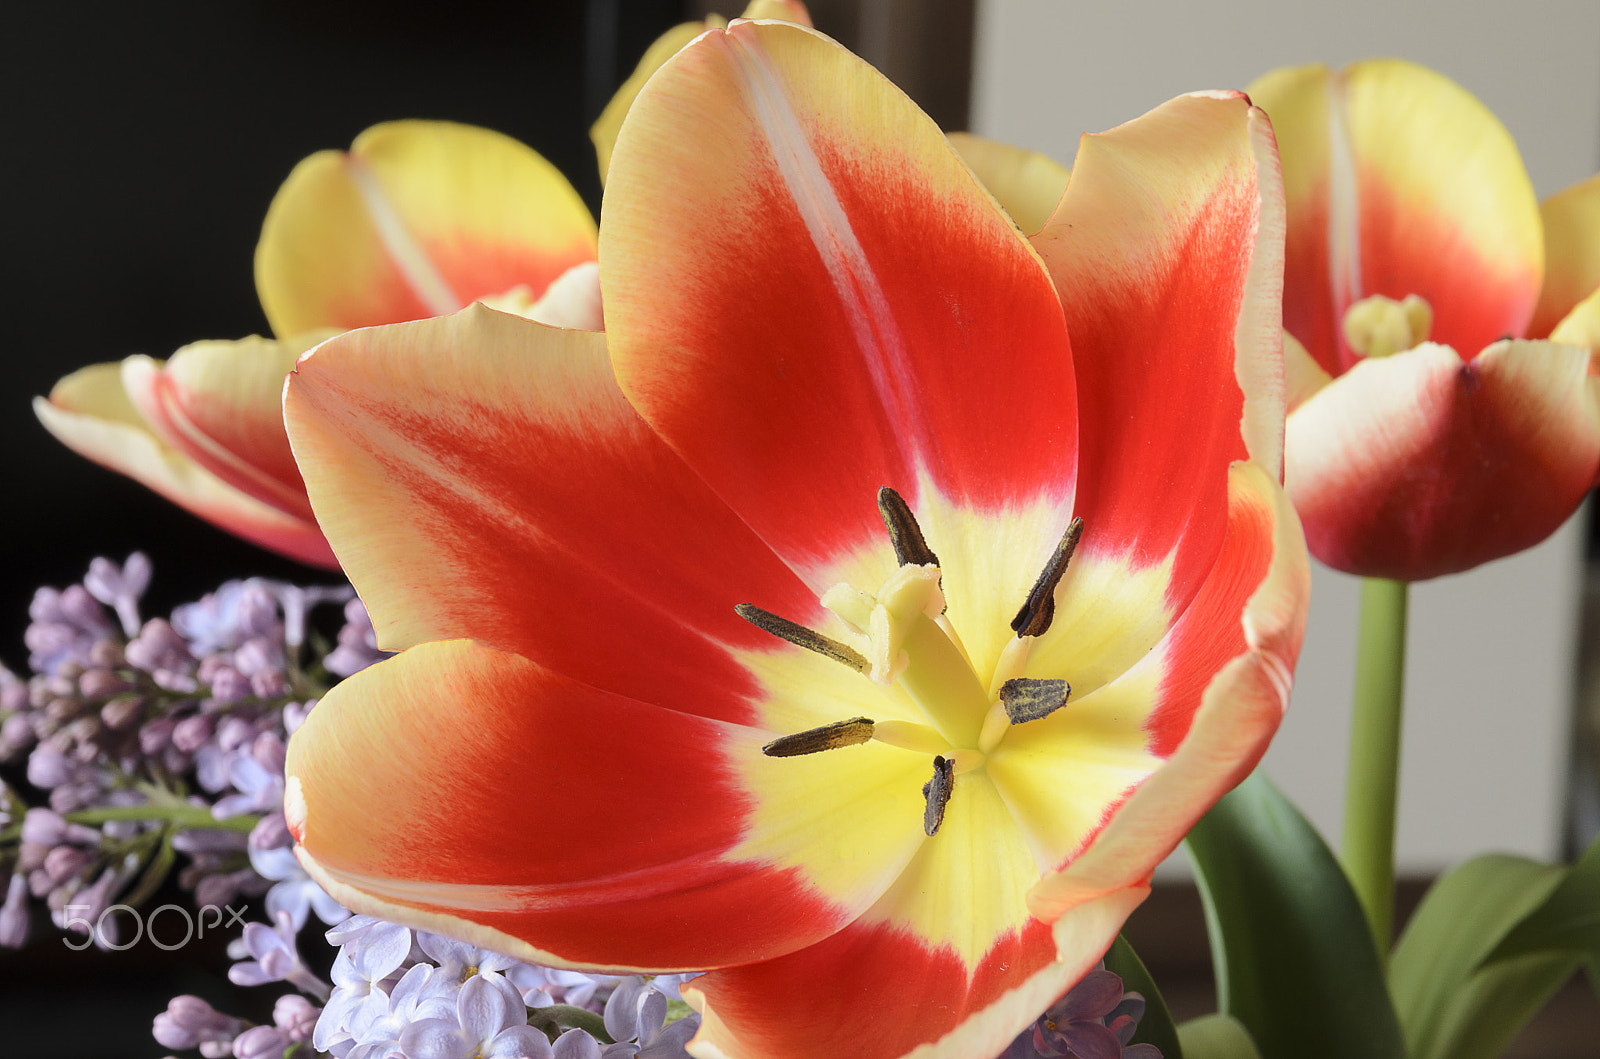 Nikon D7000 sample photo. Close up of tulip photography